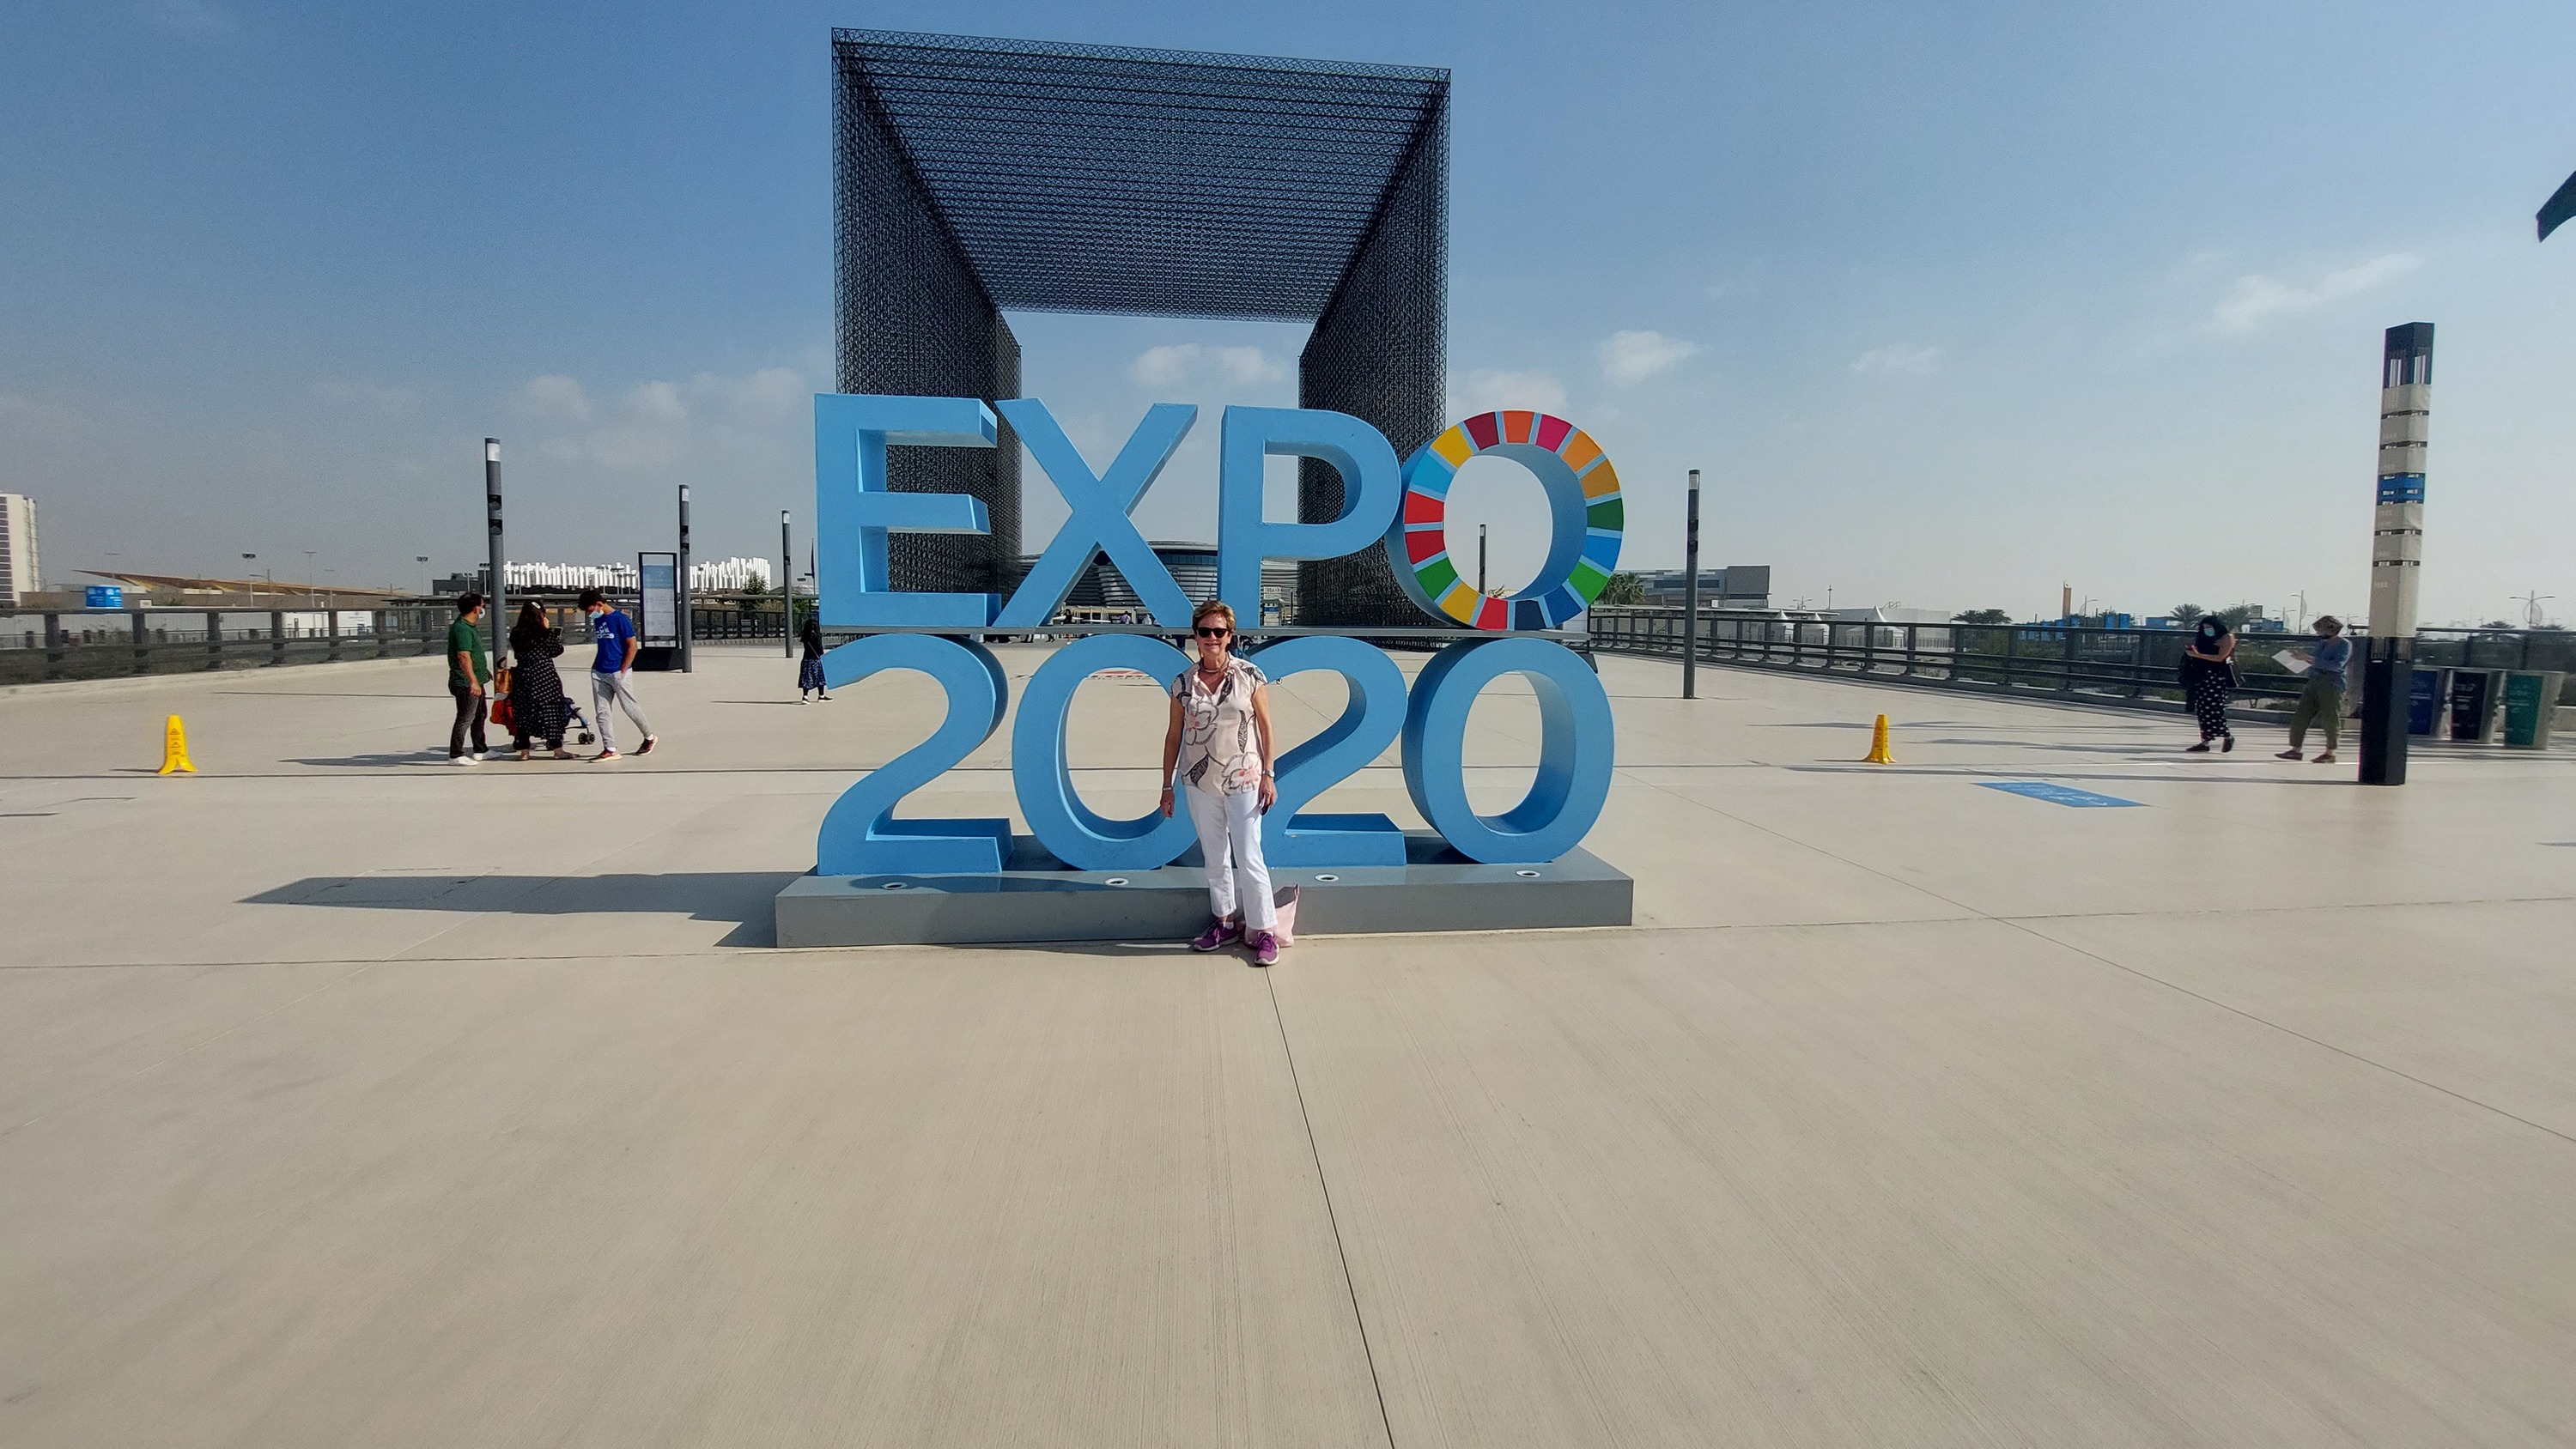 EXPO 2020, ein wahnsinns Erlebnis